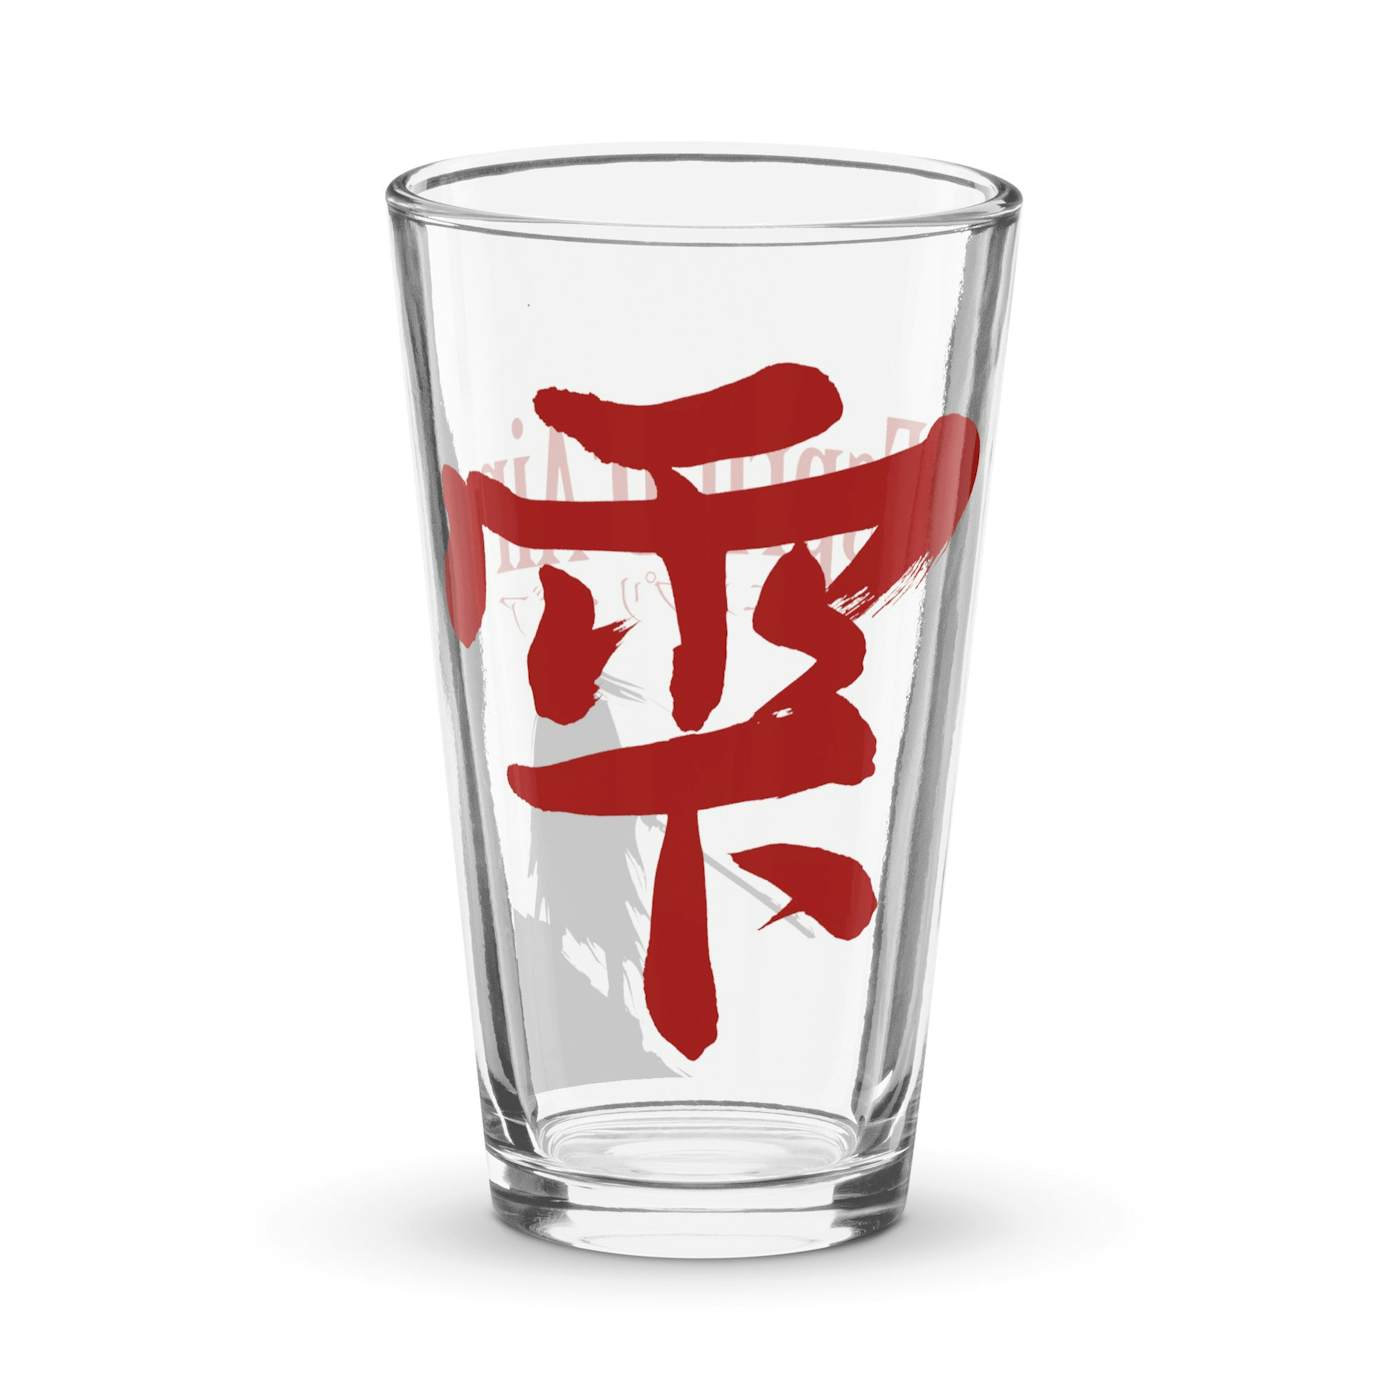 Esprit D'Air Shizuku Pint Glass 16 oz (473 ml)